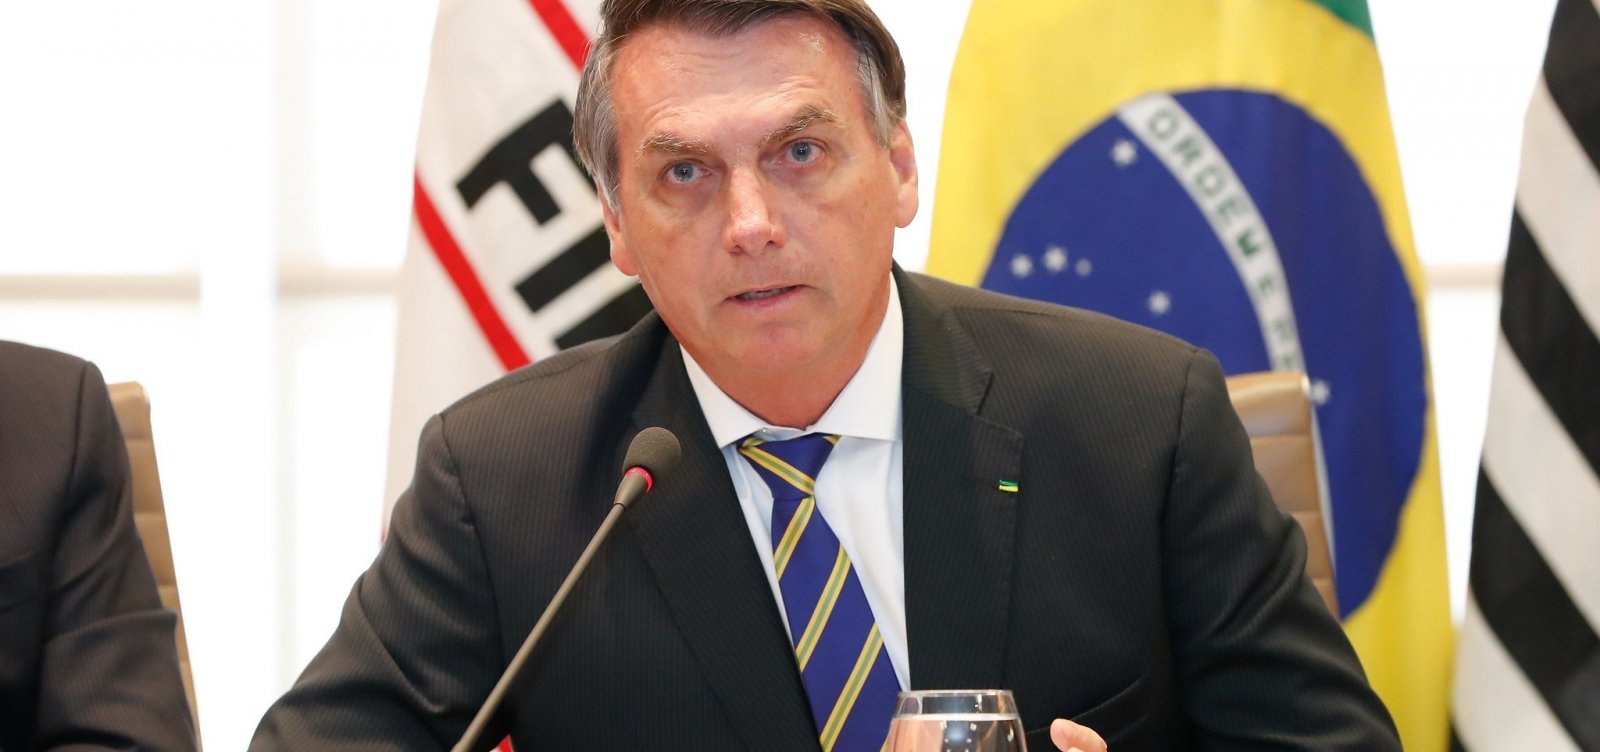 Moraes manda Bolsonaro prestar depoimento pessoalmente na PF sobre vazamento de documentos nesta sexta